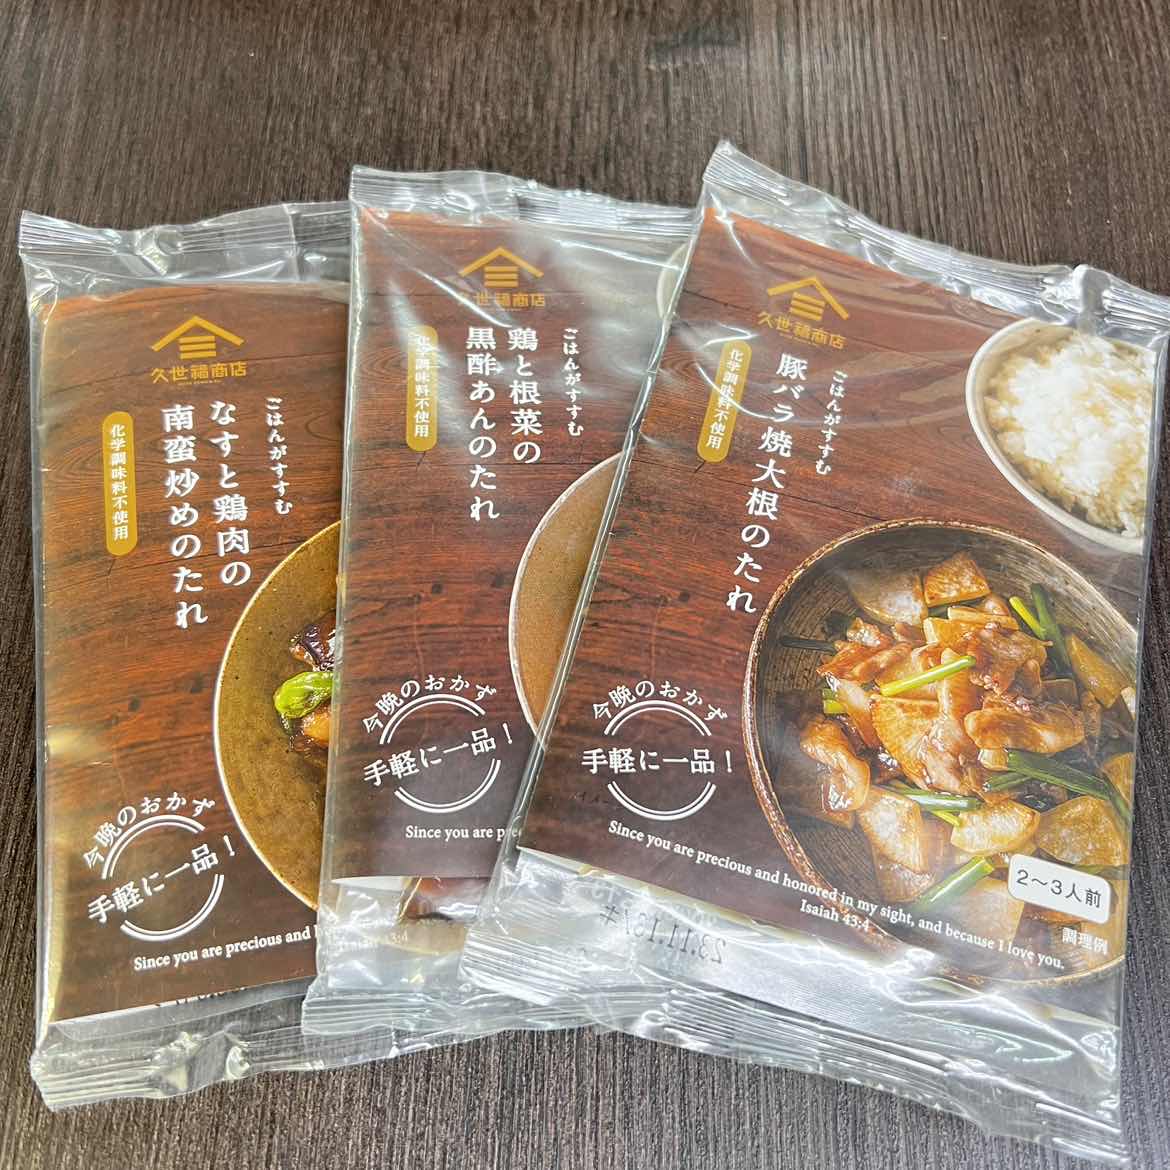 日本进口久世福商店猪肉鸡蛋鸡肉炒菜调味料超值特价数量限定3袋